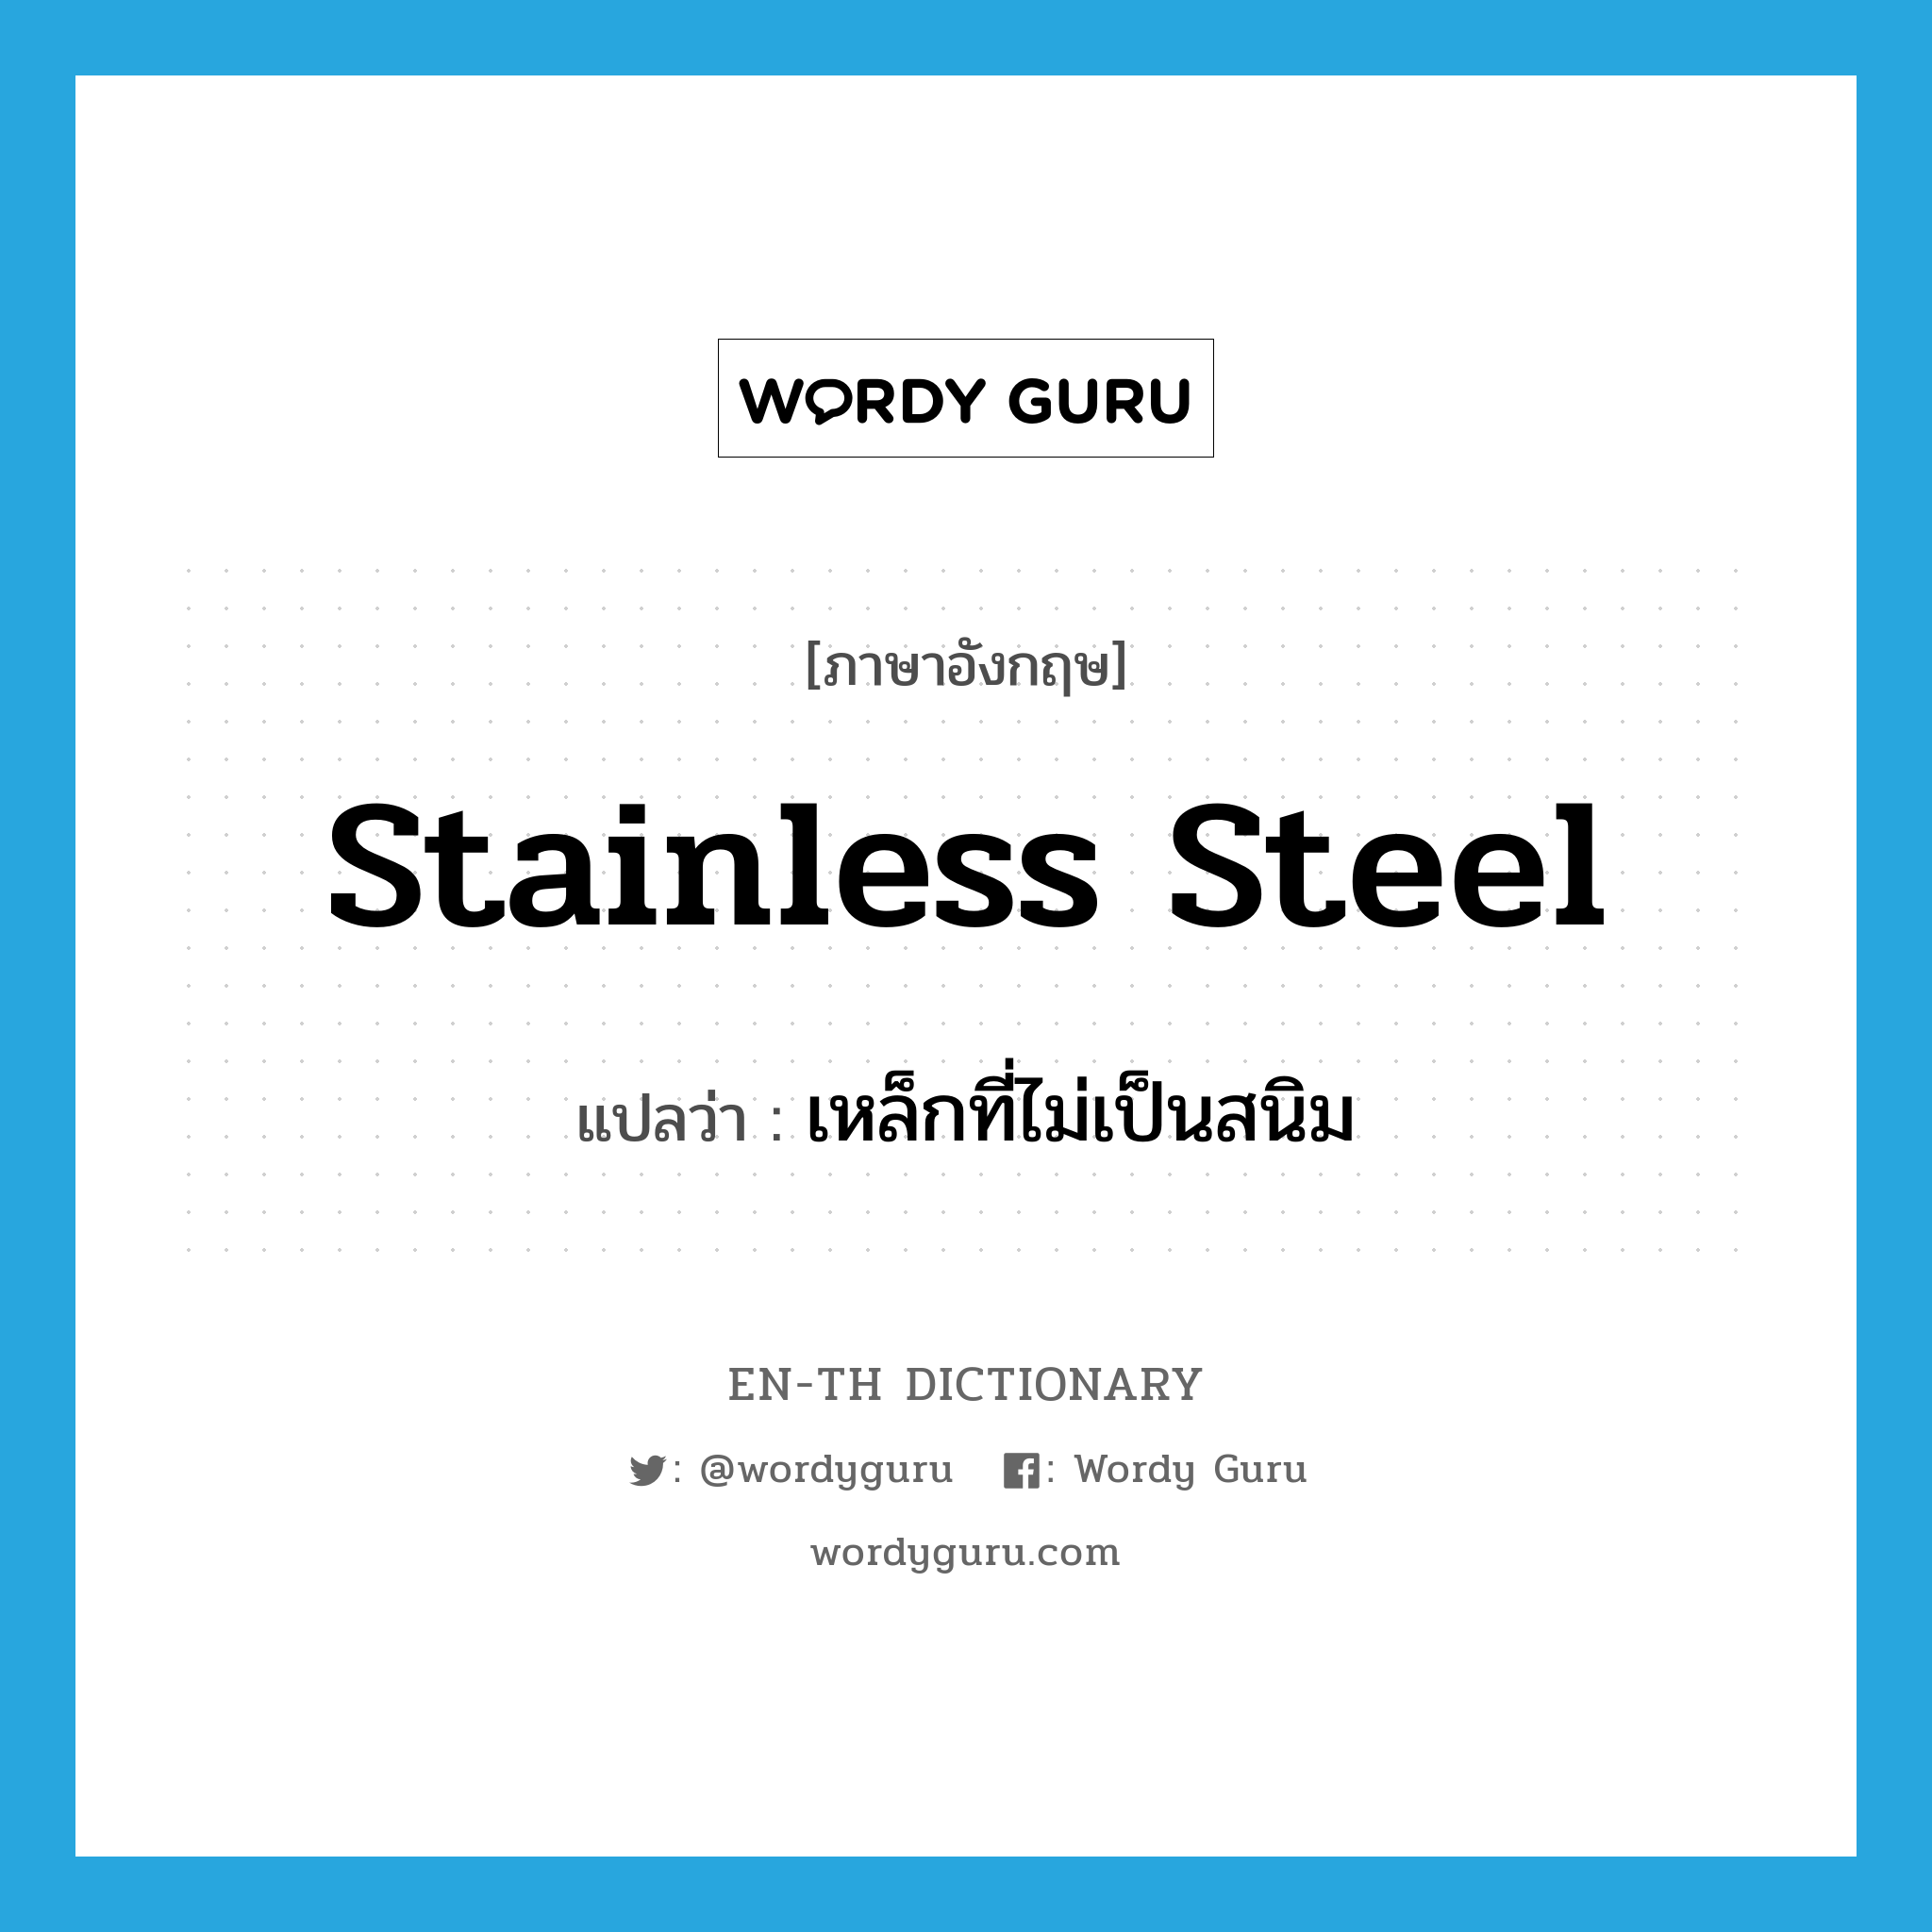 stainless steel แปลว่า?, คำศัพท์ภาษาอังกฤษ stainless steel แปลว่า เหล็กที่ไม่เป็นสนิม ประเภท N หมวด N